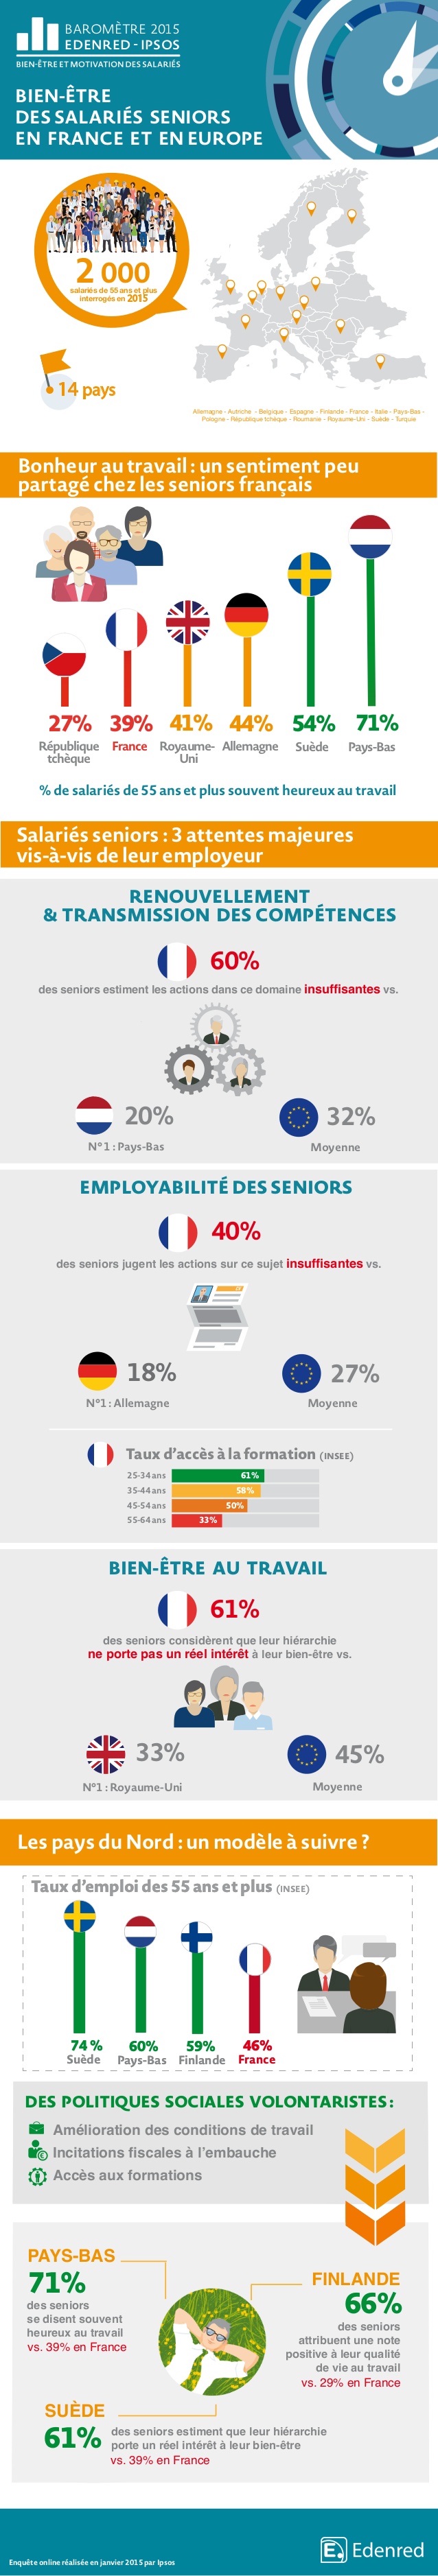 Bien-être des salariés séniors en France et en Europe